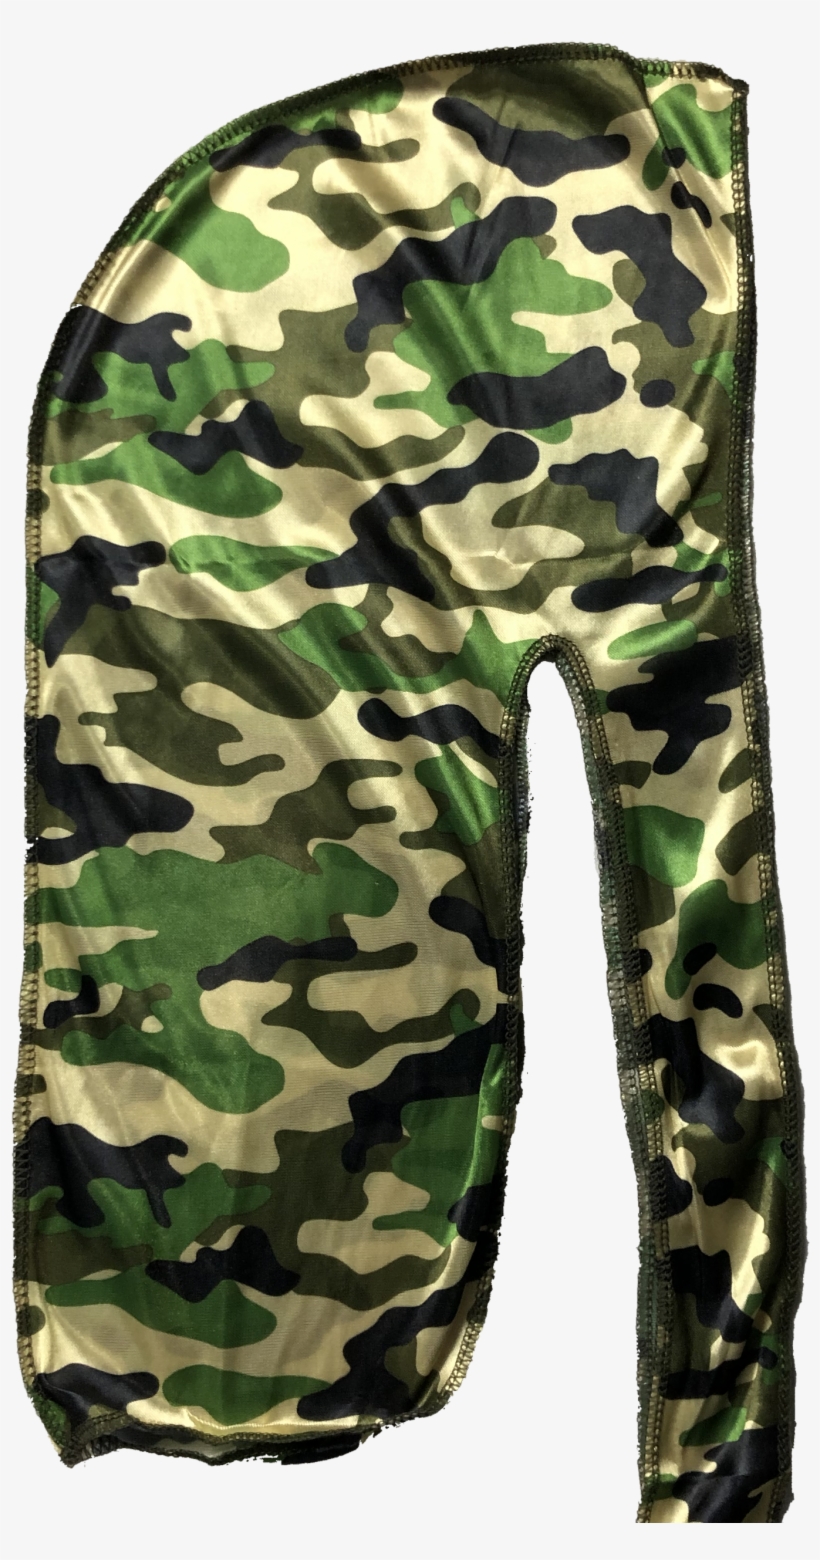 Camo Silky Durag - Military Uniform, transparent png #9186023